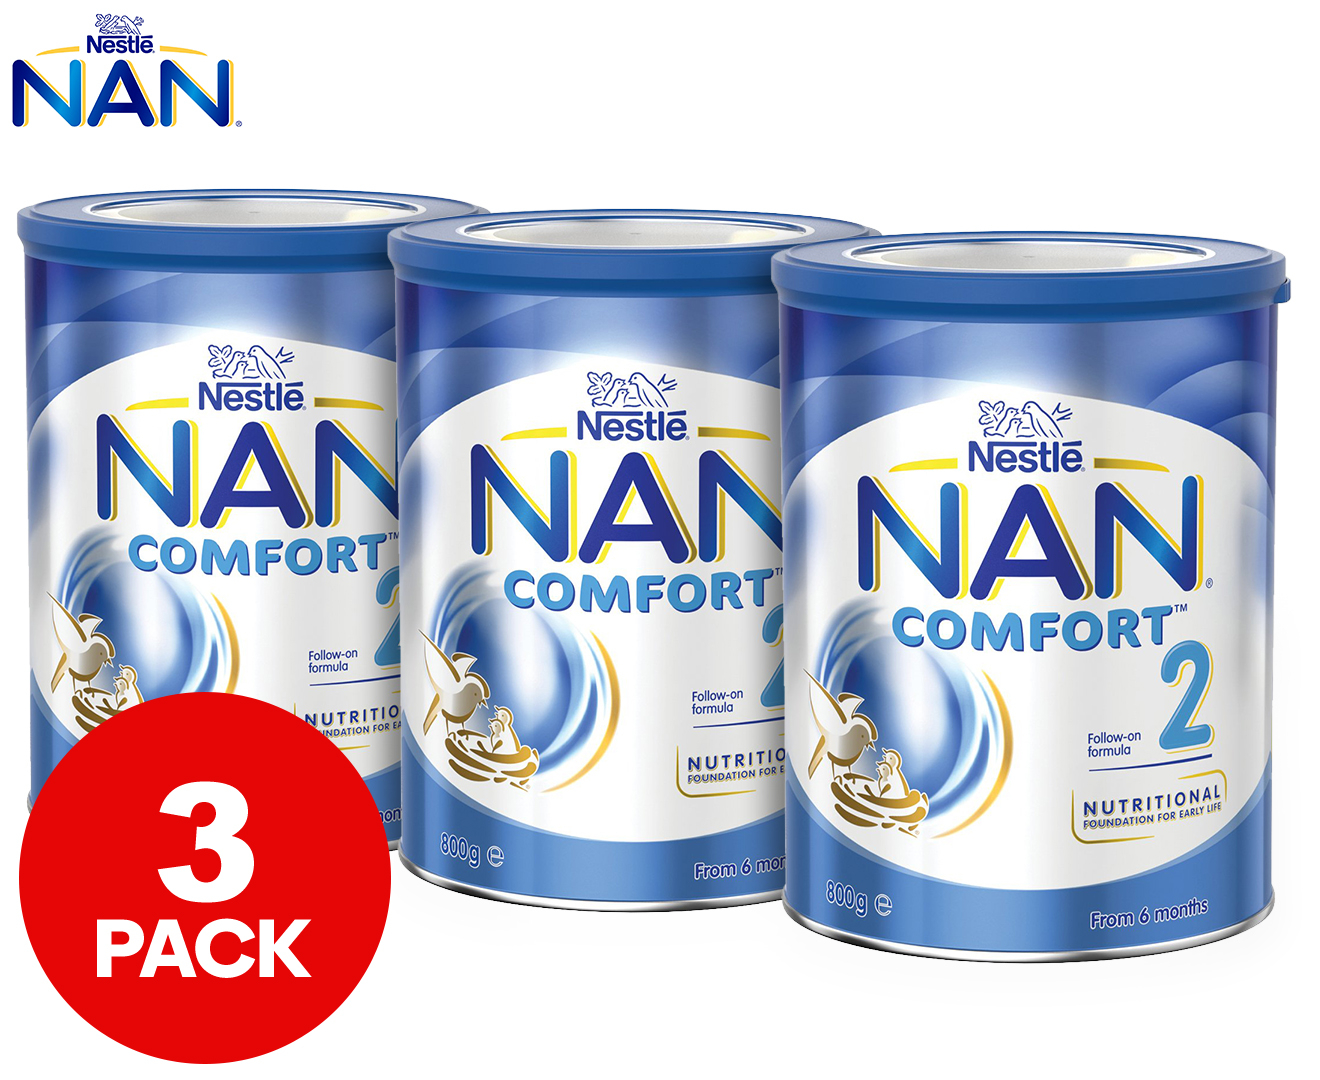 NAN 1 Comfort - 800g